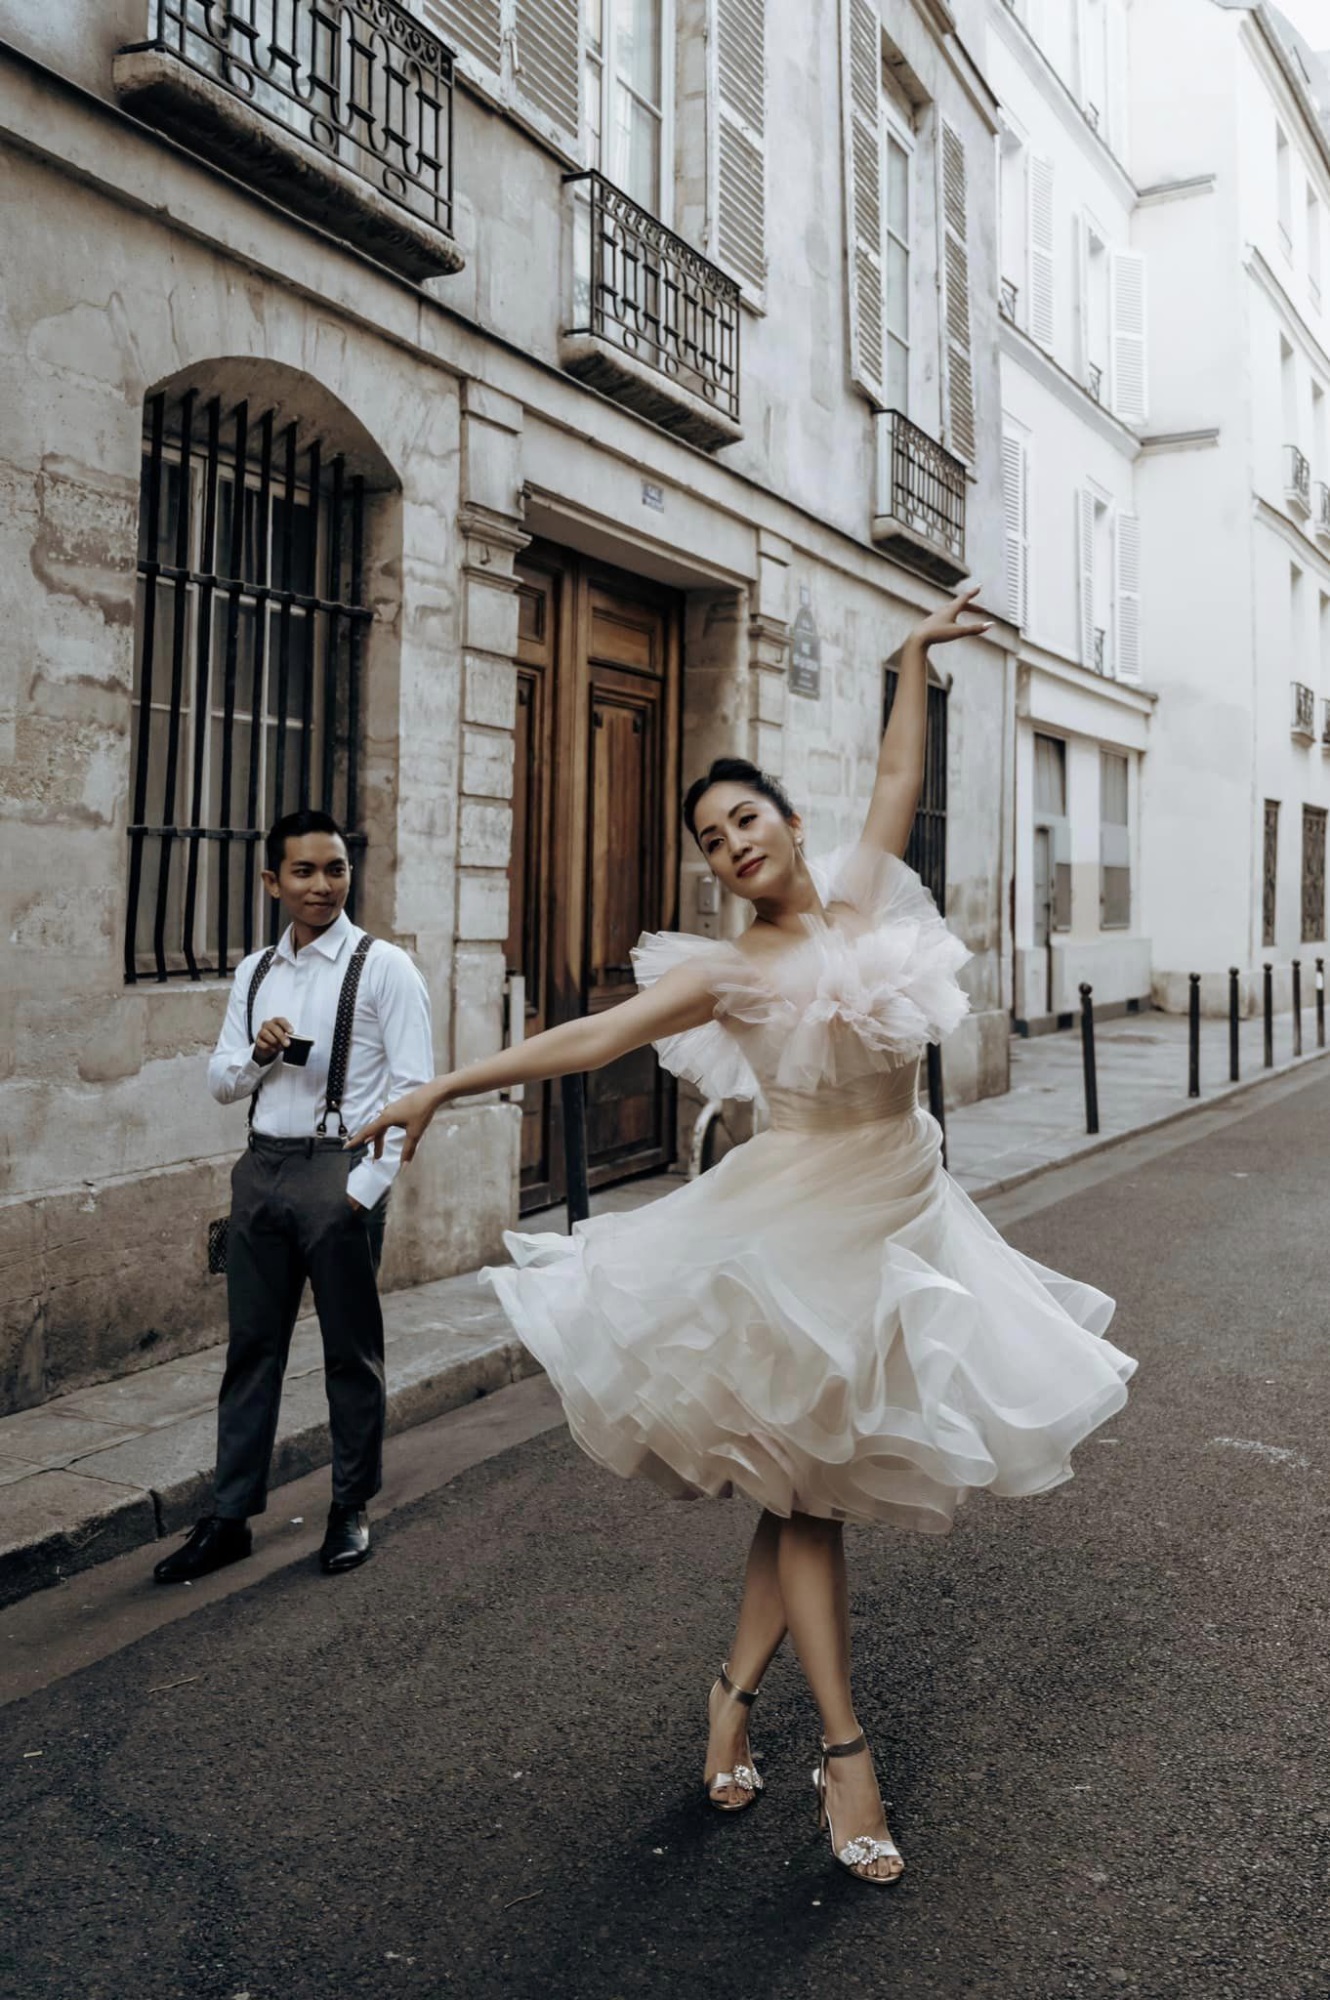 Phan Hiển và Khánh Thi tái hiện chuyện tình yêu gắn liền với nhảy múa trong bộ ảnh cưới chụp ở Pháp - Ảnh 4